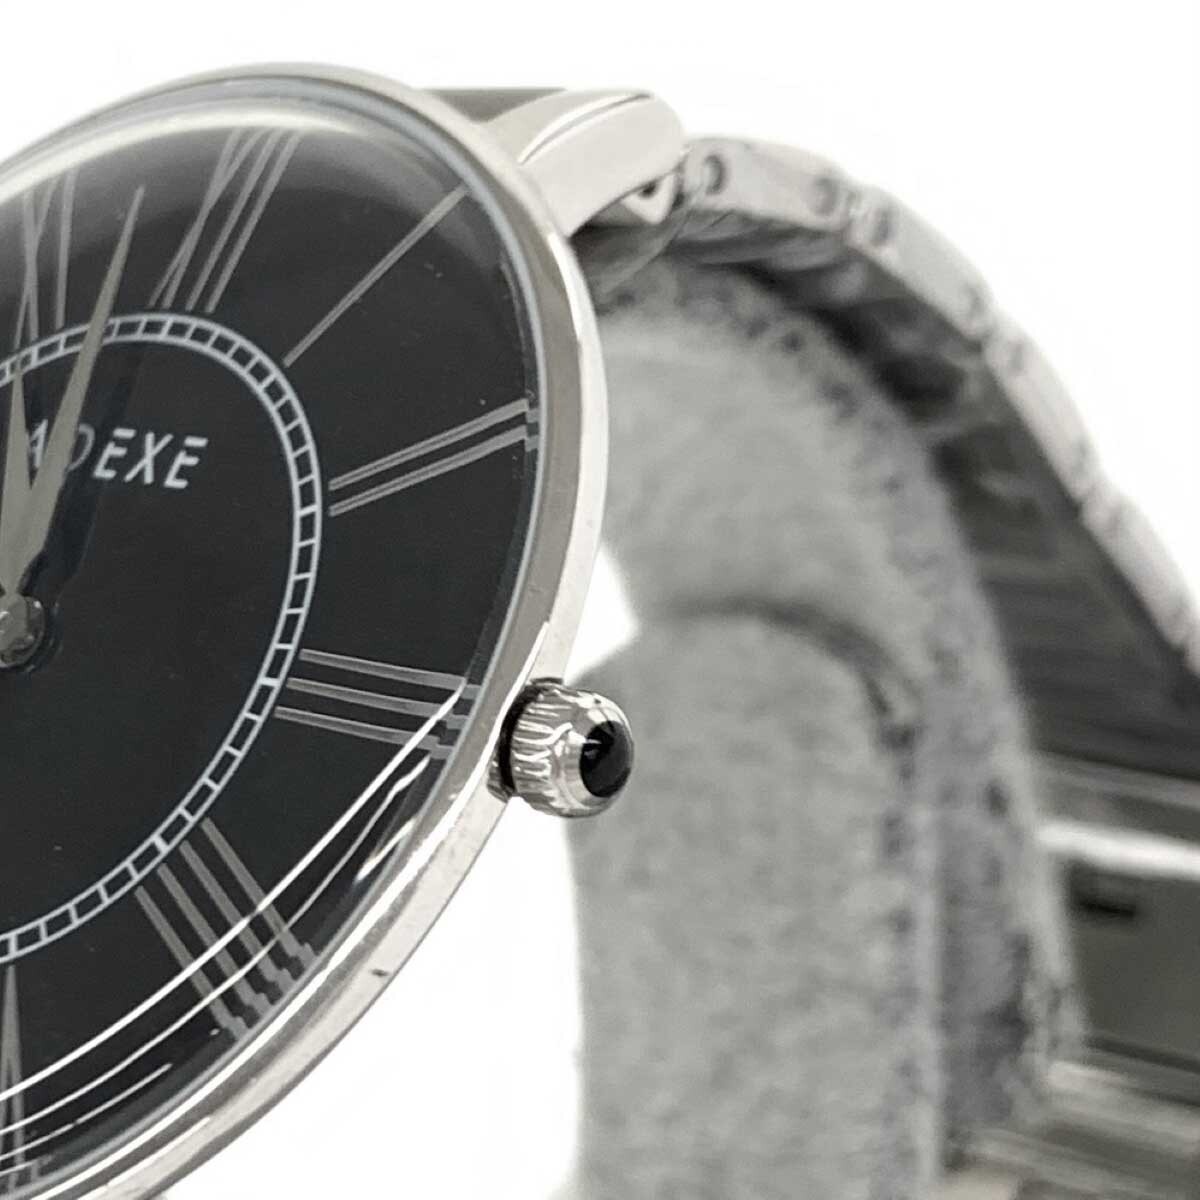 新品同様◆ADEXE アデクス 腕時計 クォーツ◆2578A-02 シルバーカラー×ブラック SS メンズ ウォッチ watch_画像5